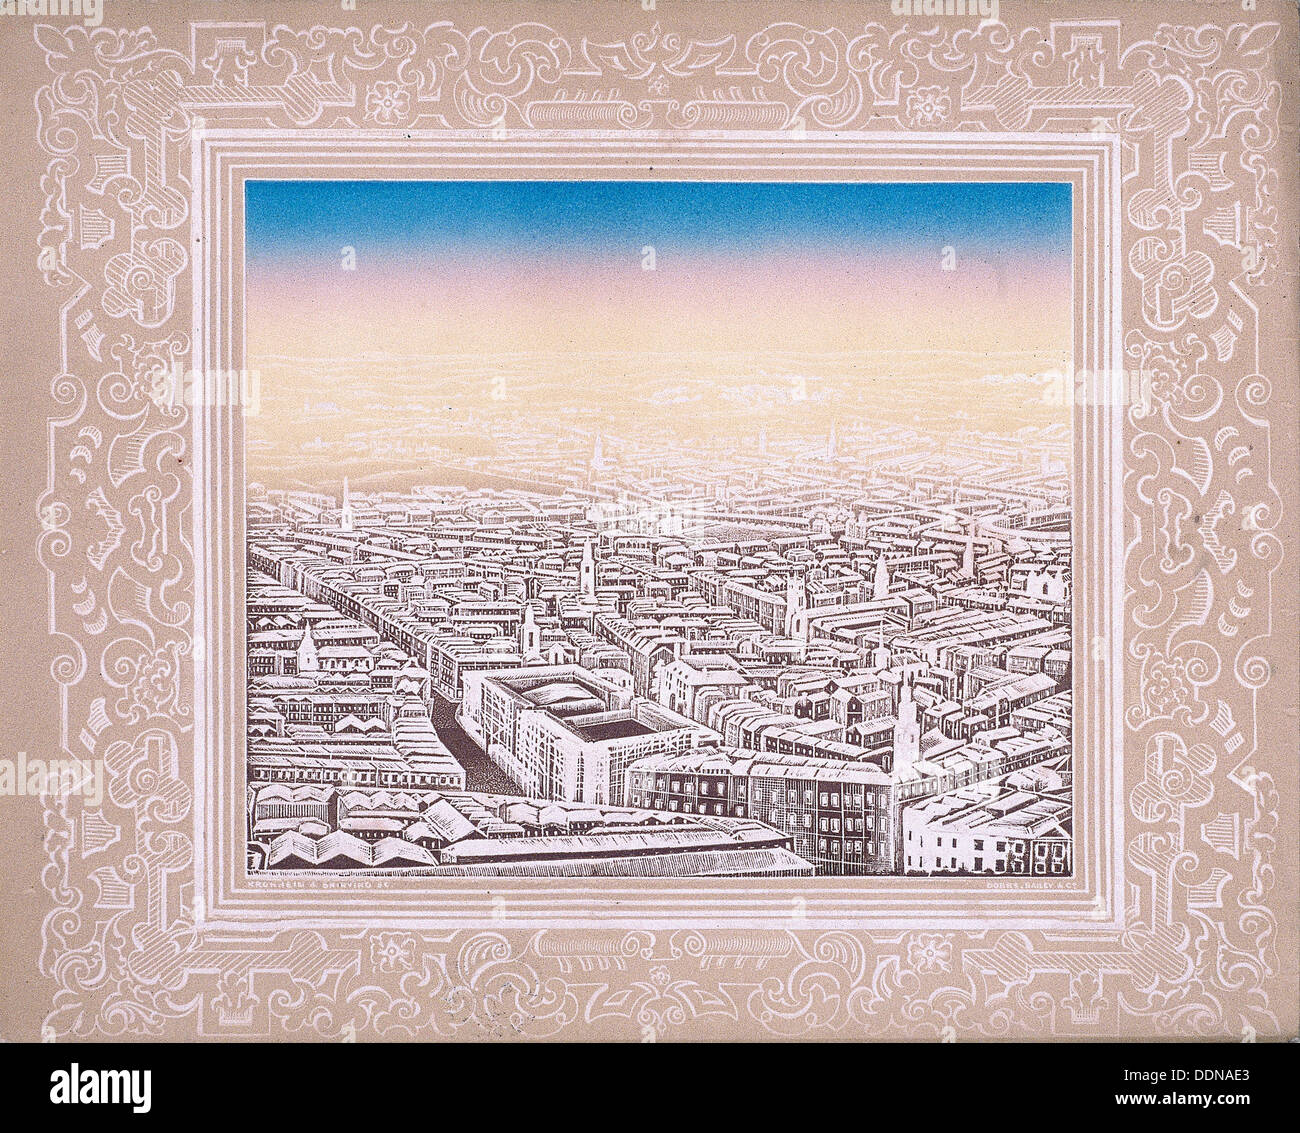 Luftaufnahme von London mit dekorativen Rahmen, c1845. Künstler: Kronheim & Co Stockfoto